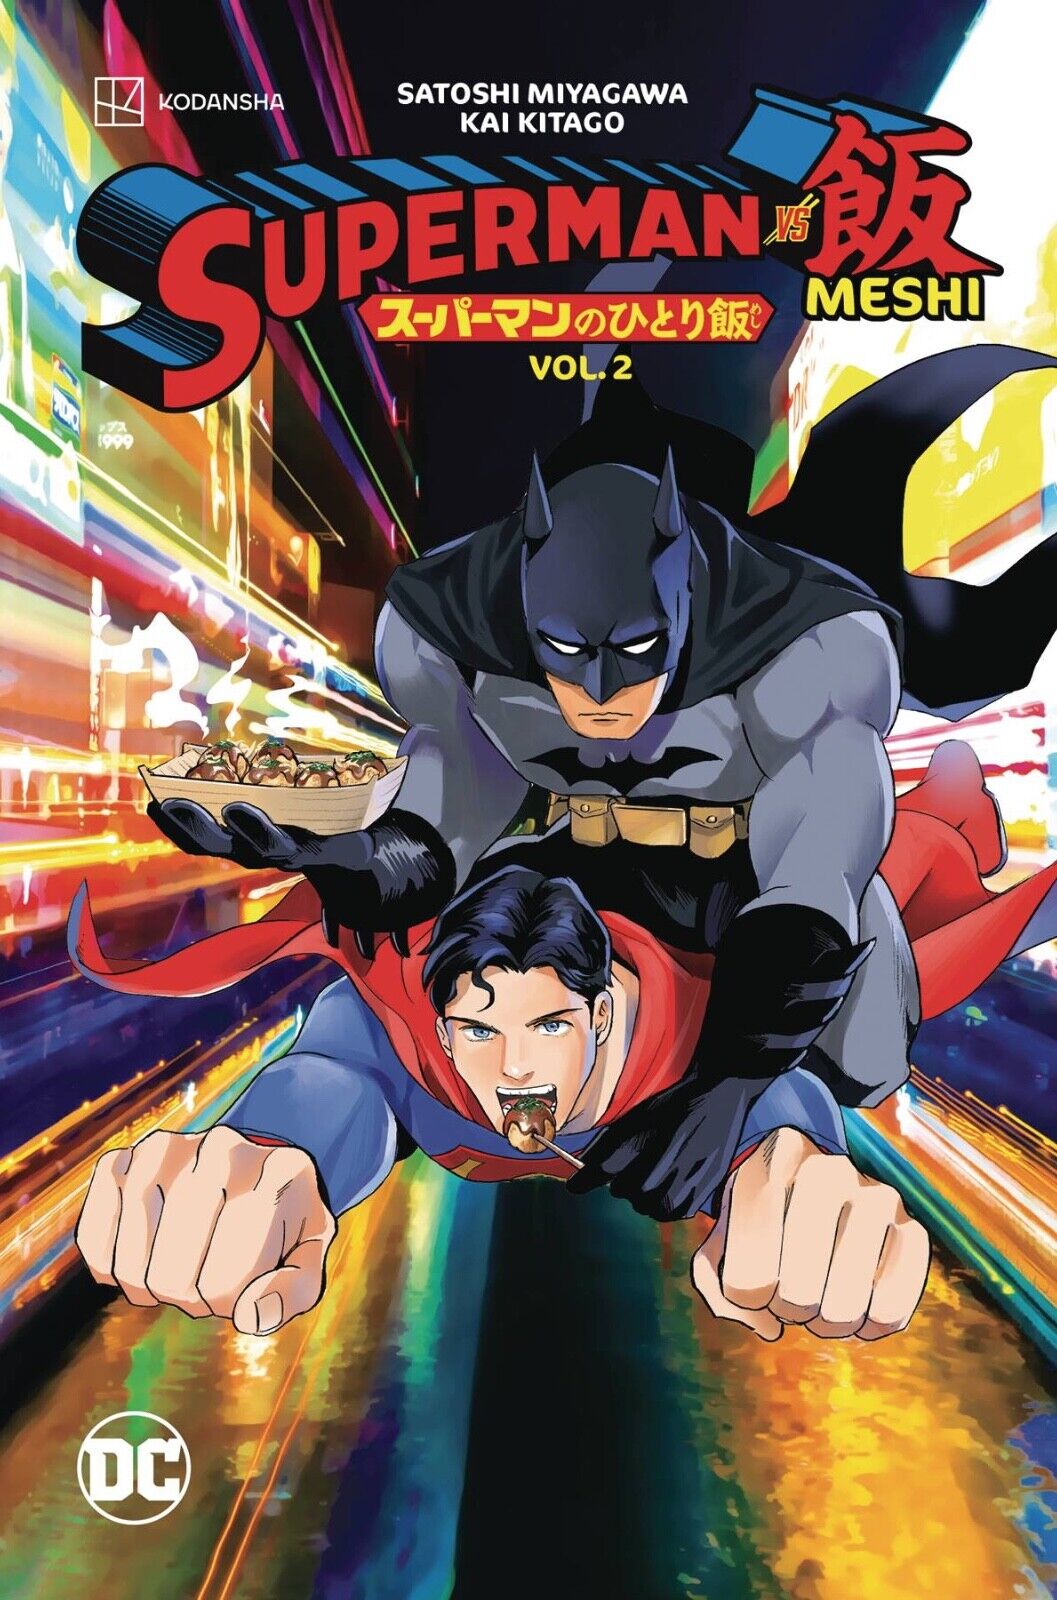 SUPERMAN VS MESHI VOL 2 by SATOSHI MIYAGAWA **NEW** KODANSHA DC COMICS